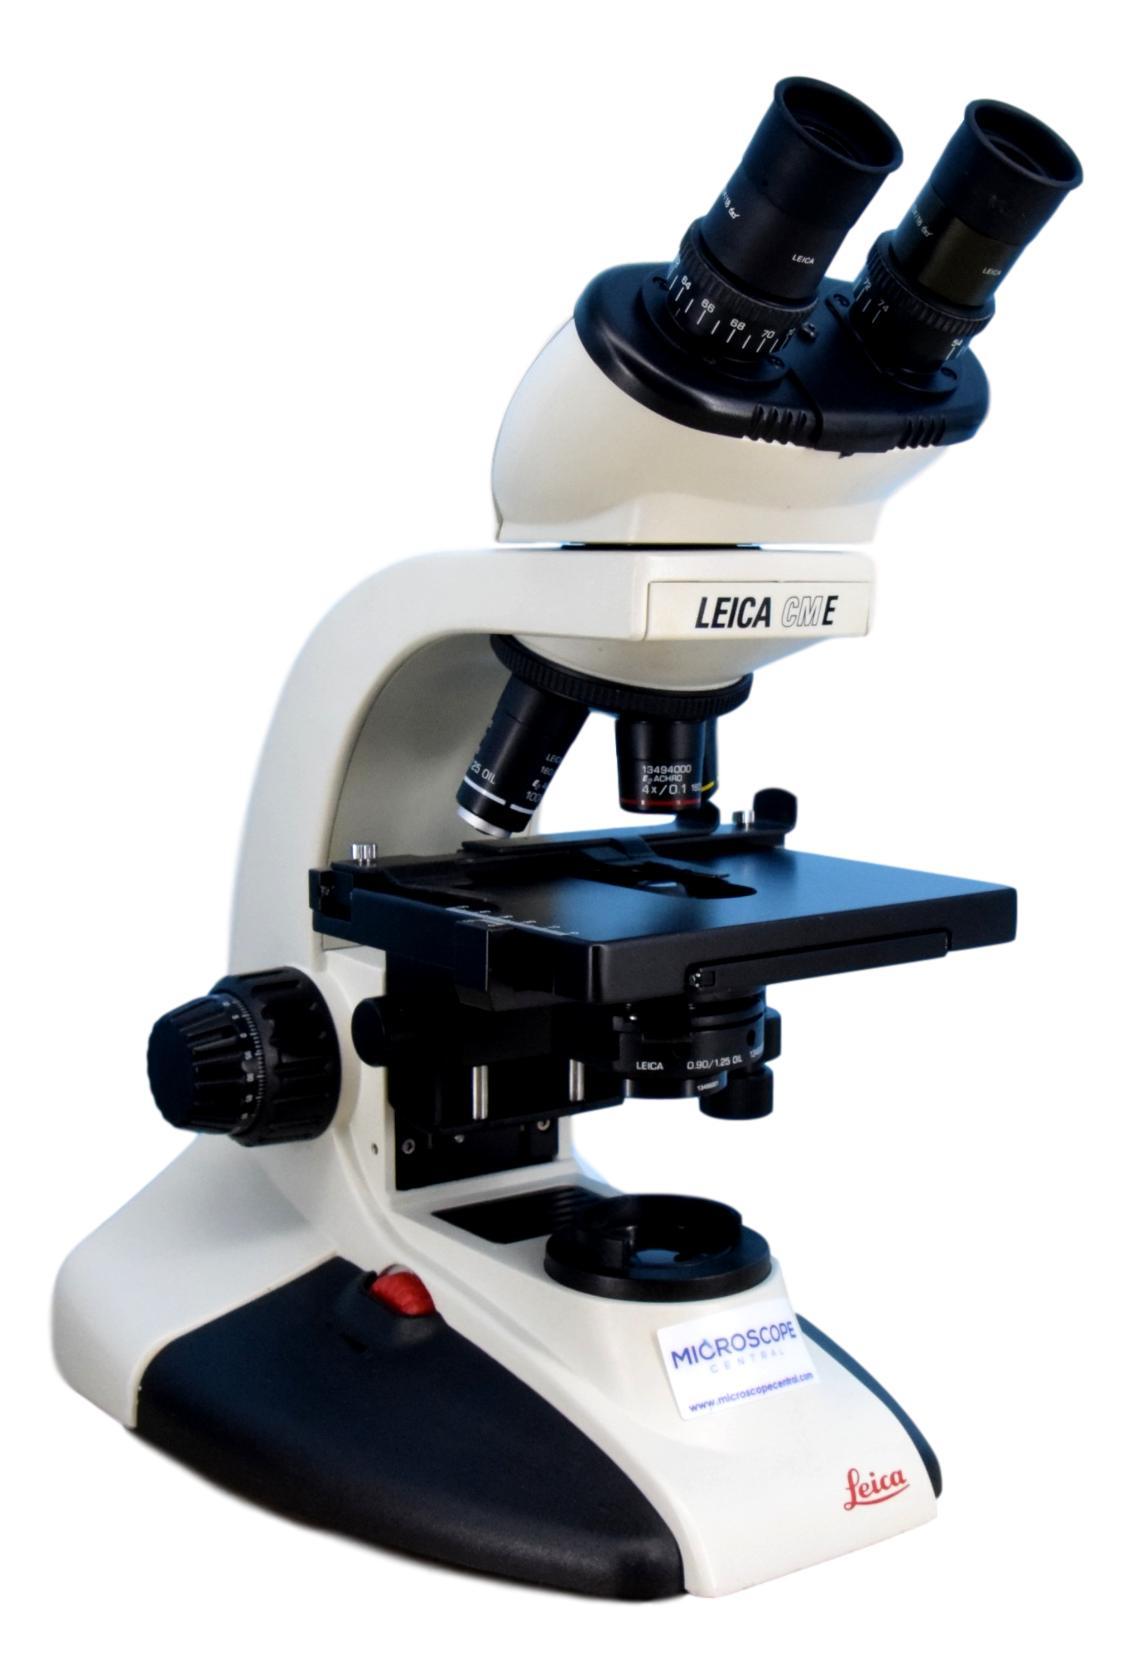 Leica CME Microscope | 4x, 10x, 40x, 100x Oil Objectives